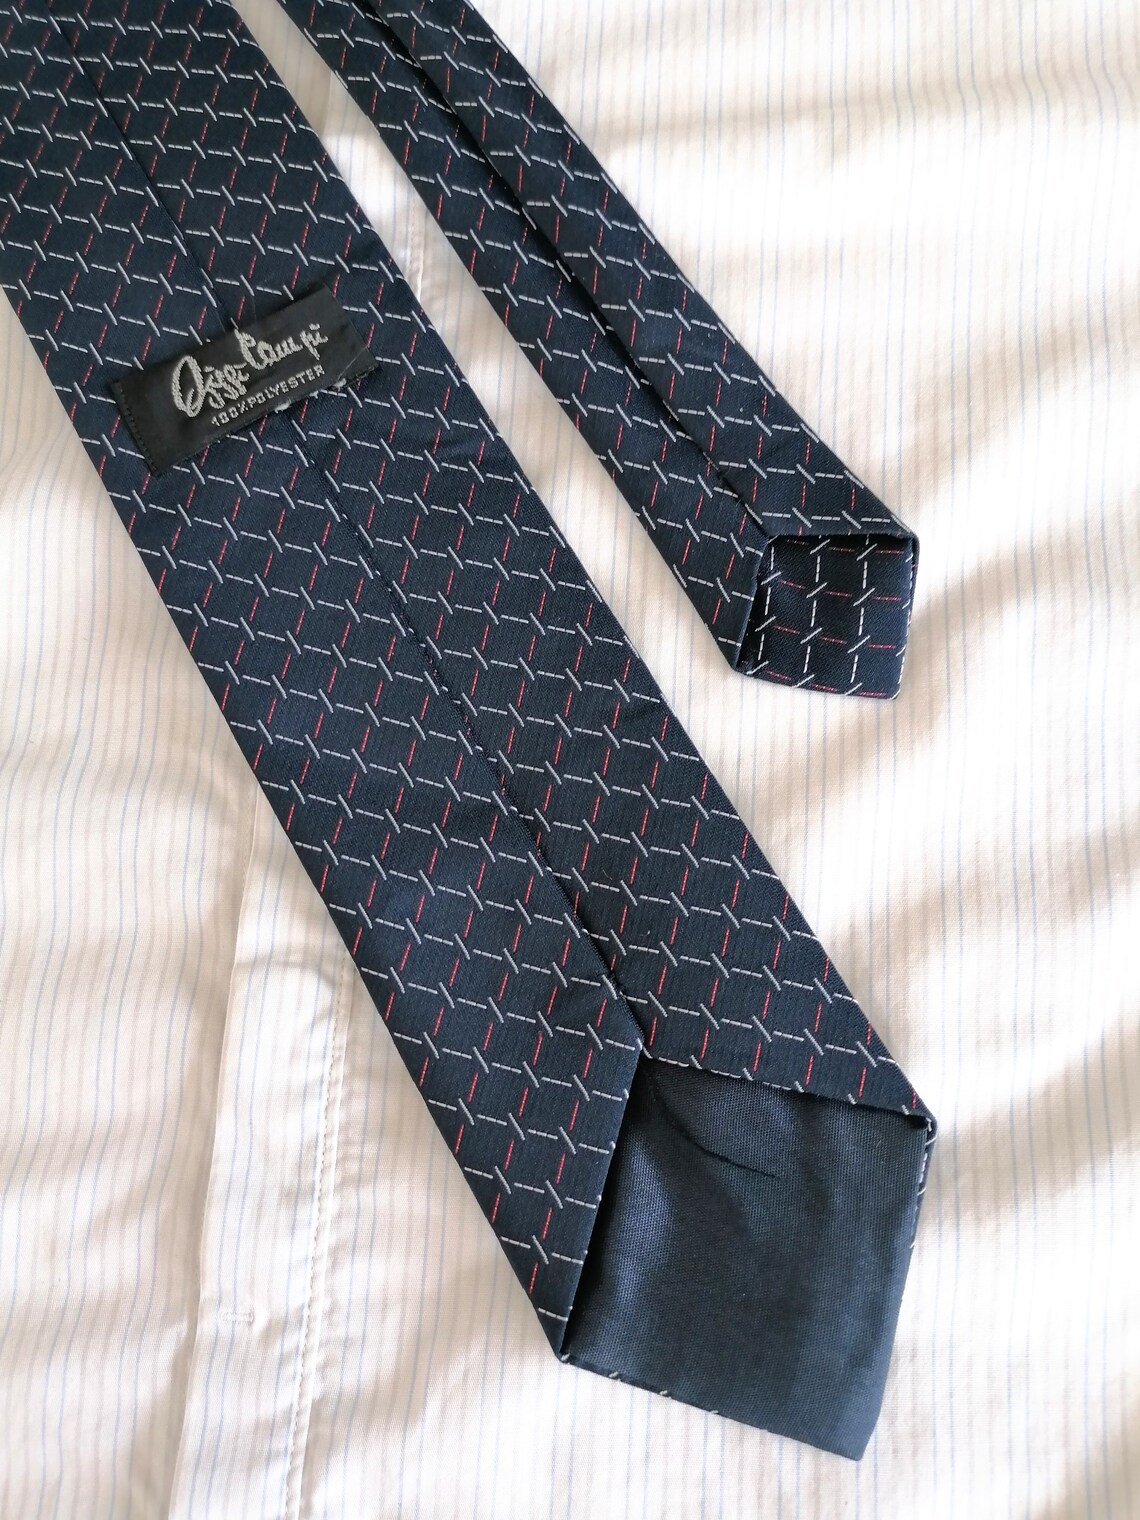 VINTAGE 70s 60s navy NeckTie tie cravat. Geometric Mod tie. | Etsy